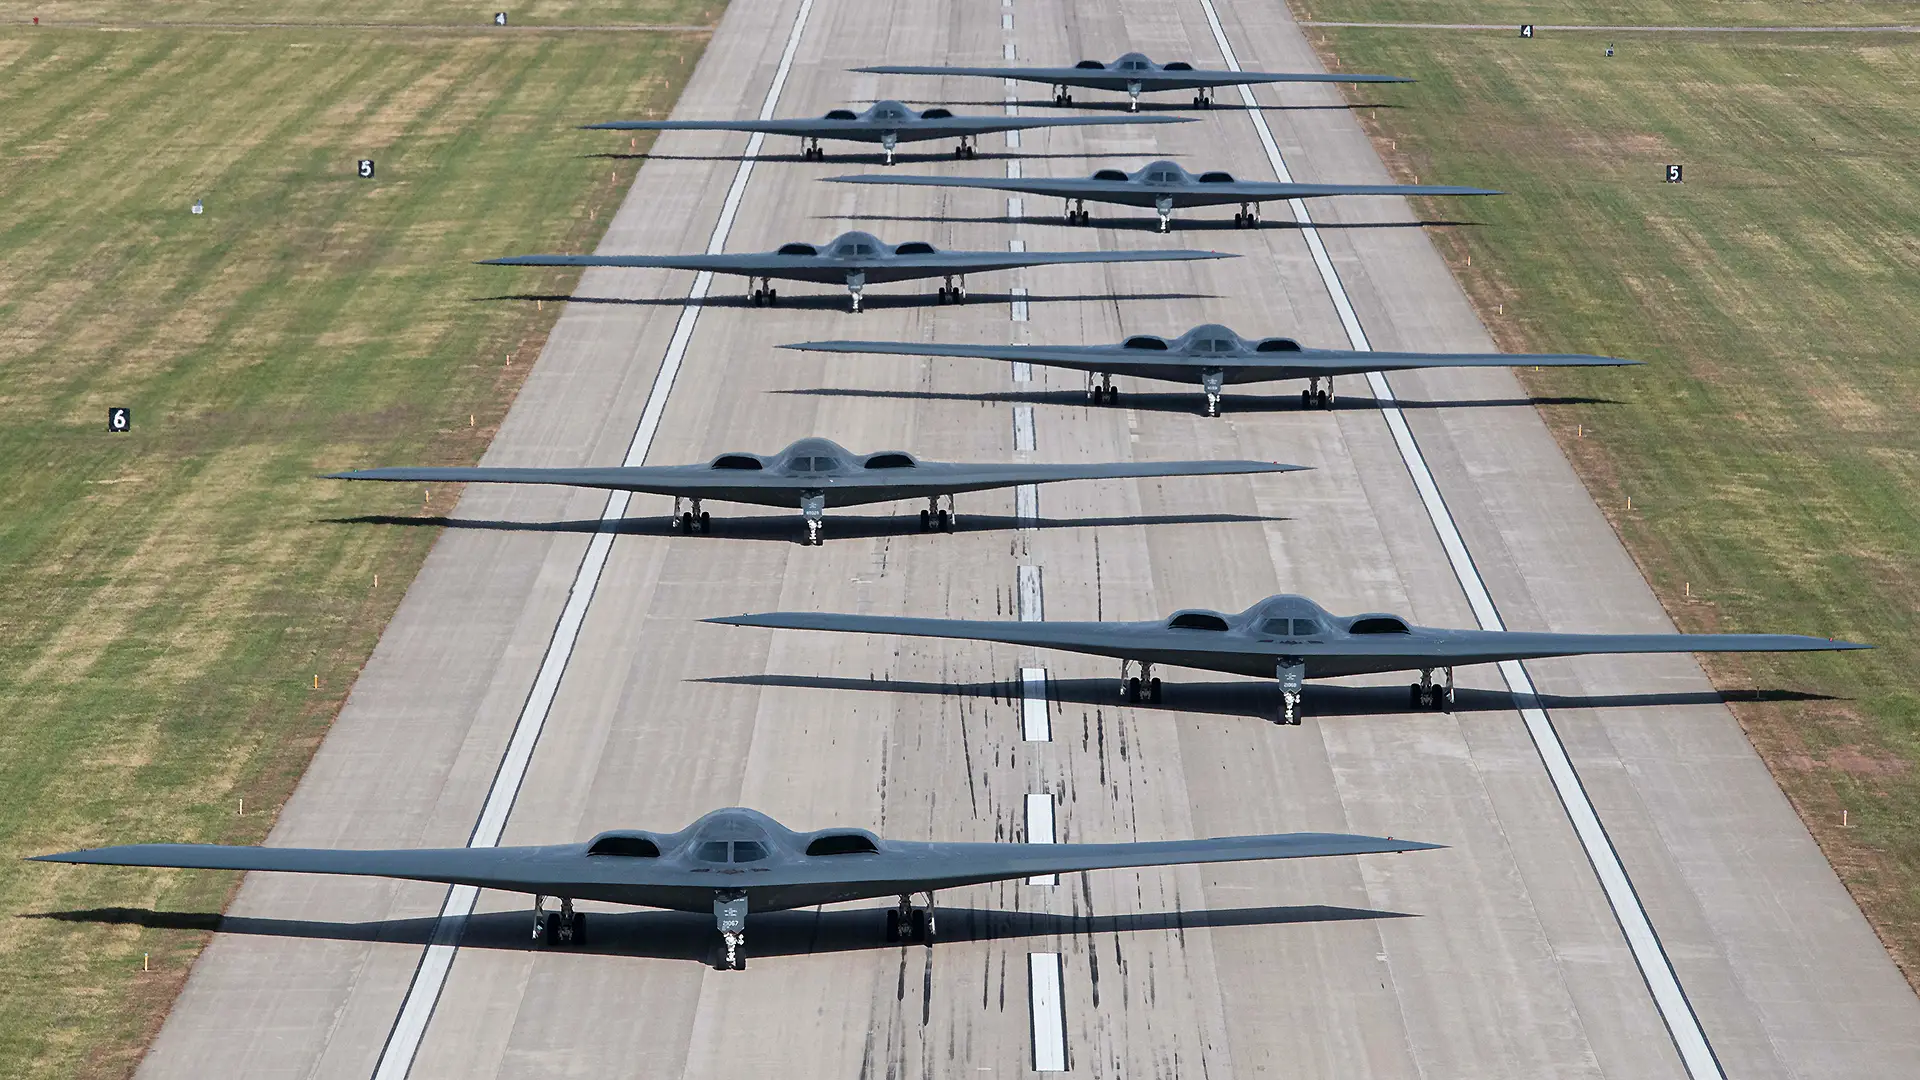 USA wzbija w niebo jednocześnie 40% swojej floty bombowców atomowych B-2 Spirit kosztujących ponad 2 mld USD